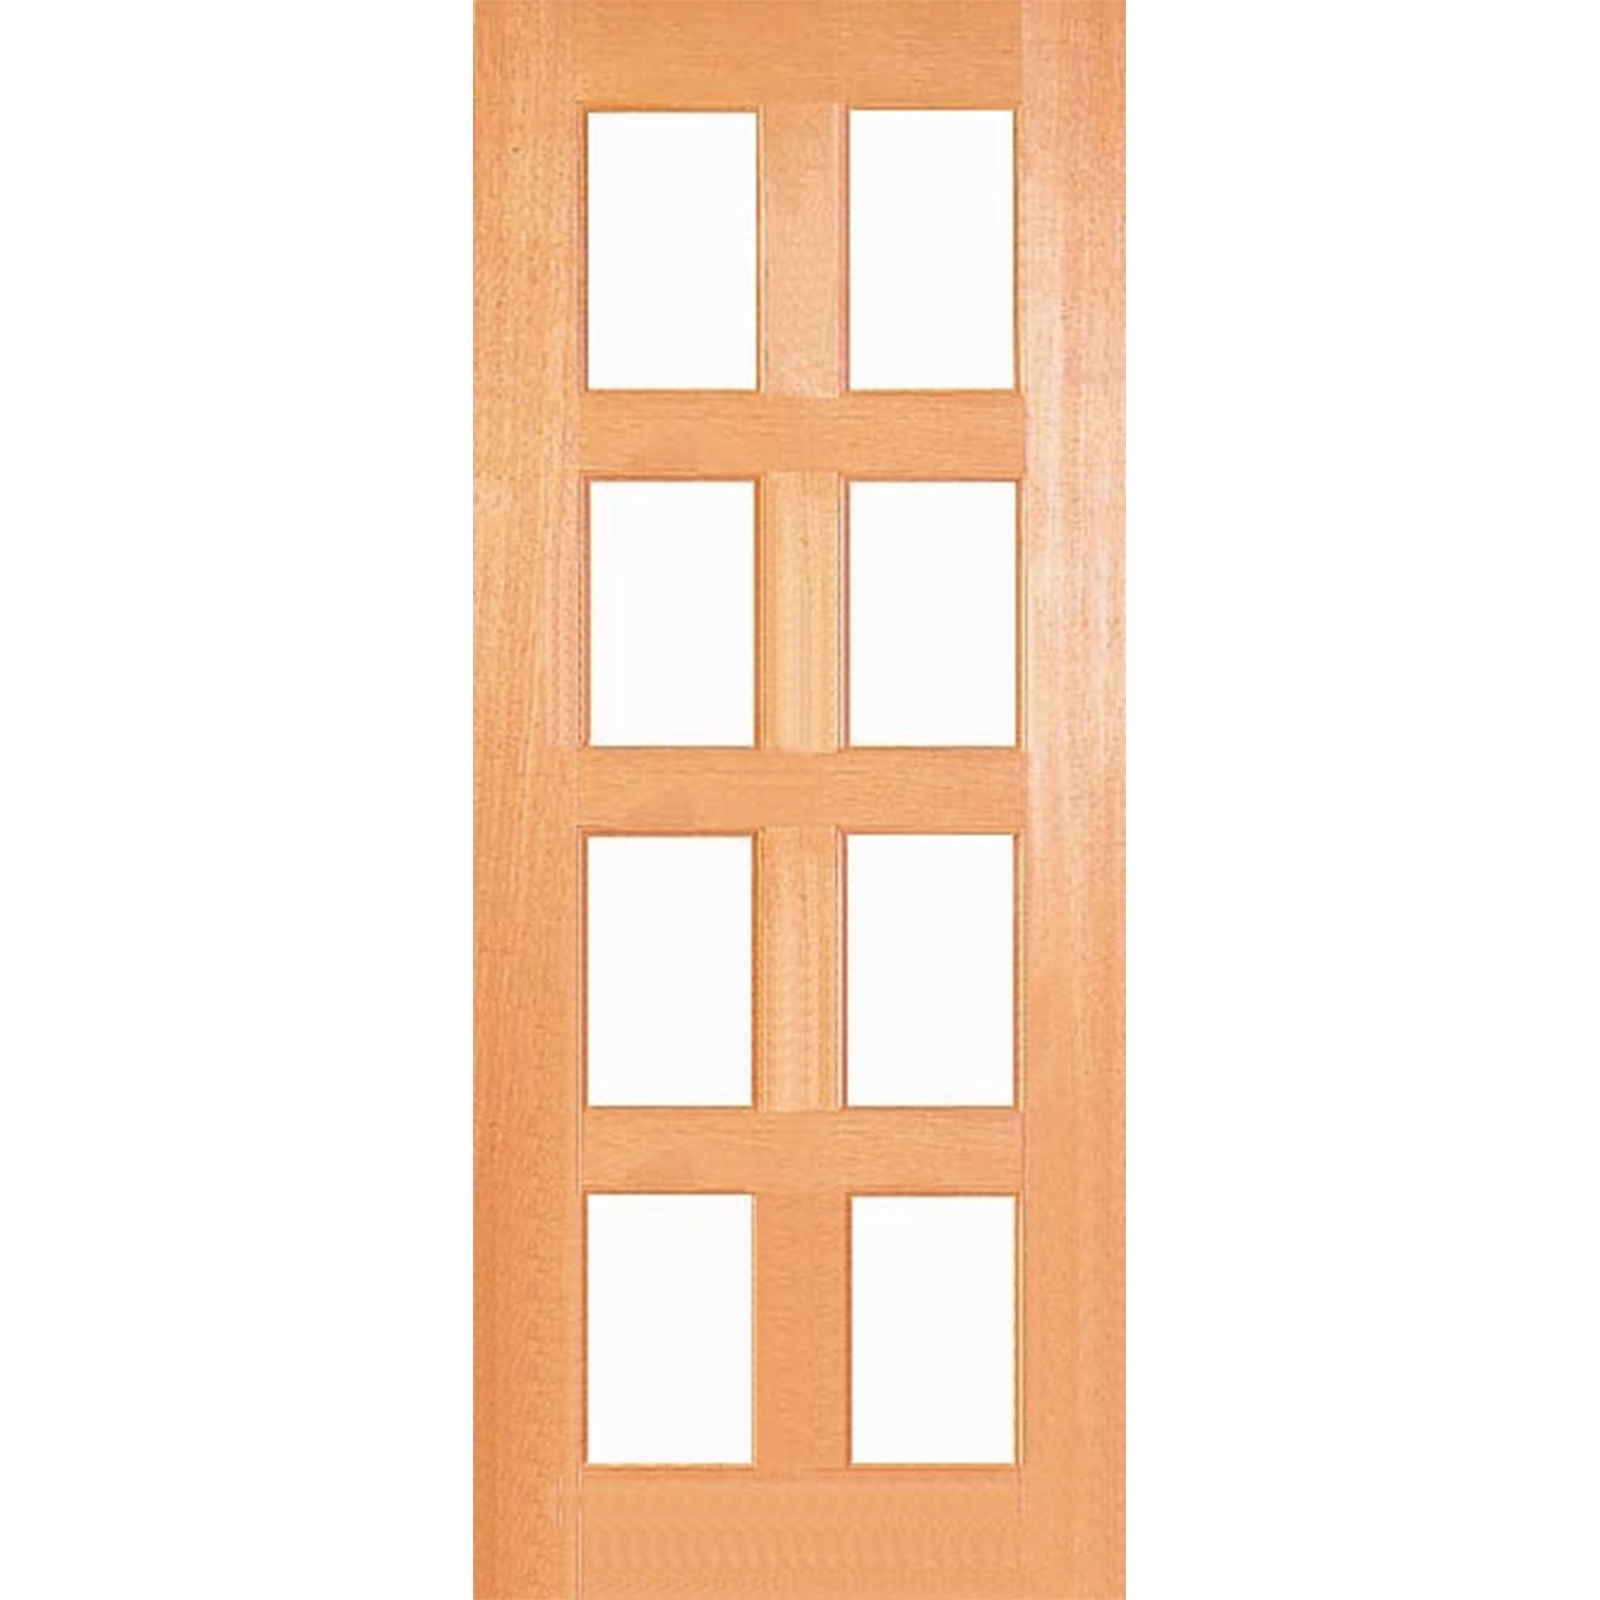 Woodcraft Doors 2040 x 720 x 35mm Kensington Clear Safety Glass Internal Door